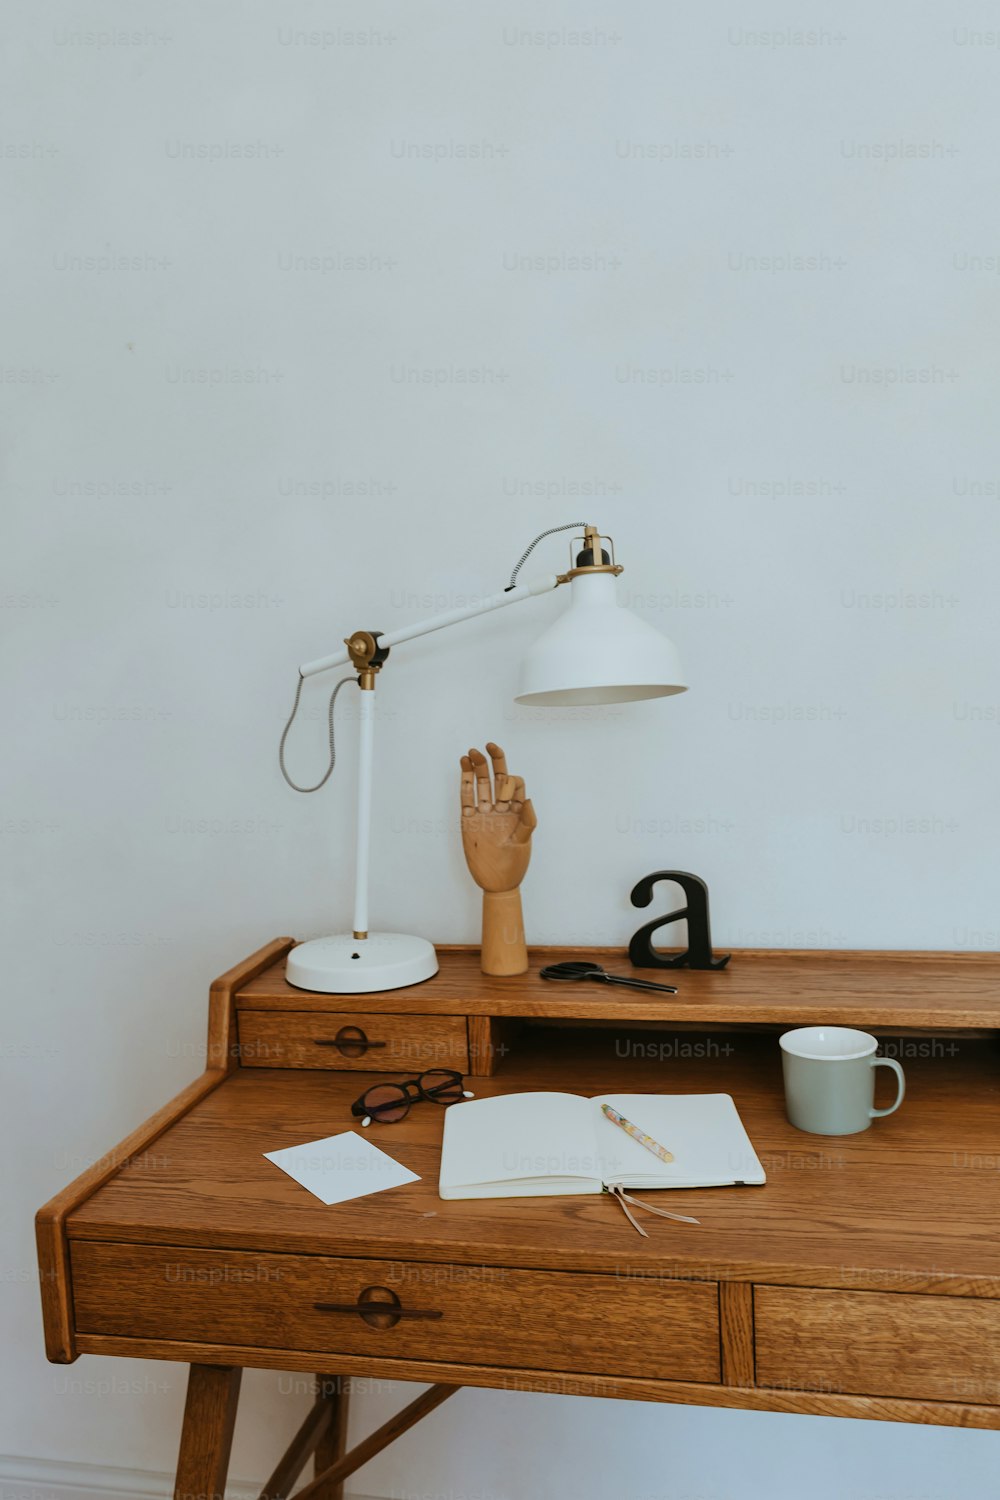 una scrivania di legno sormontata da una lampada e un libro